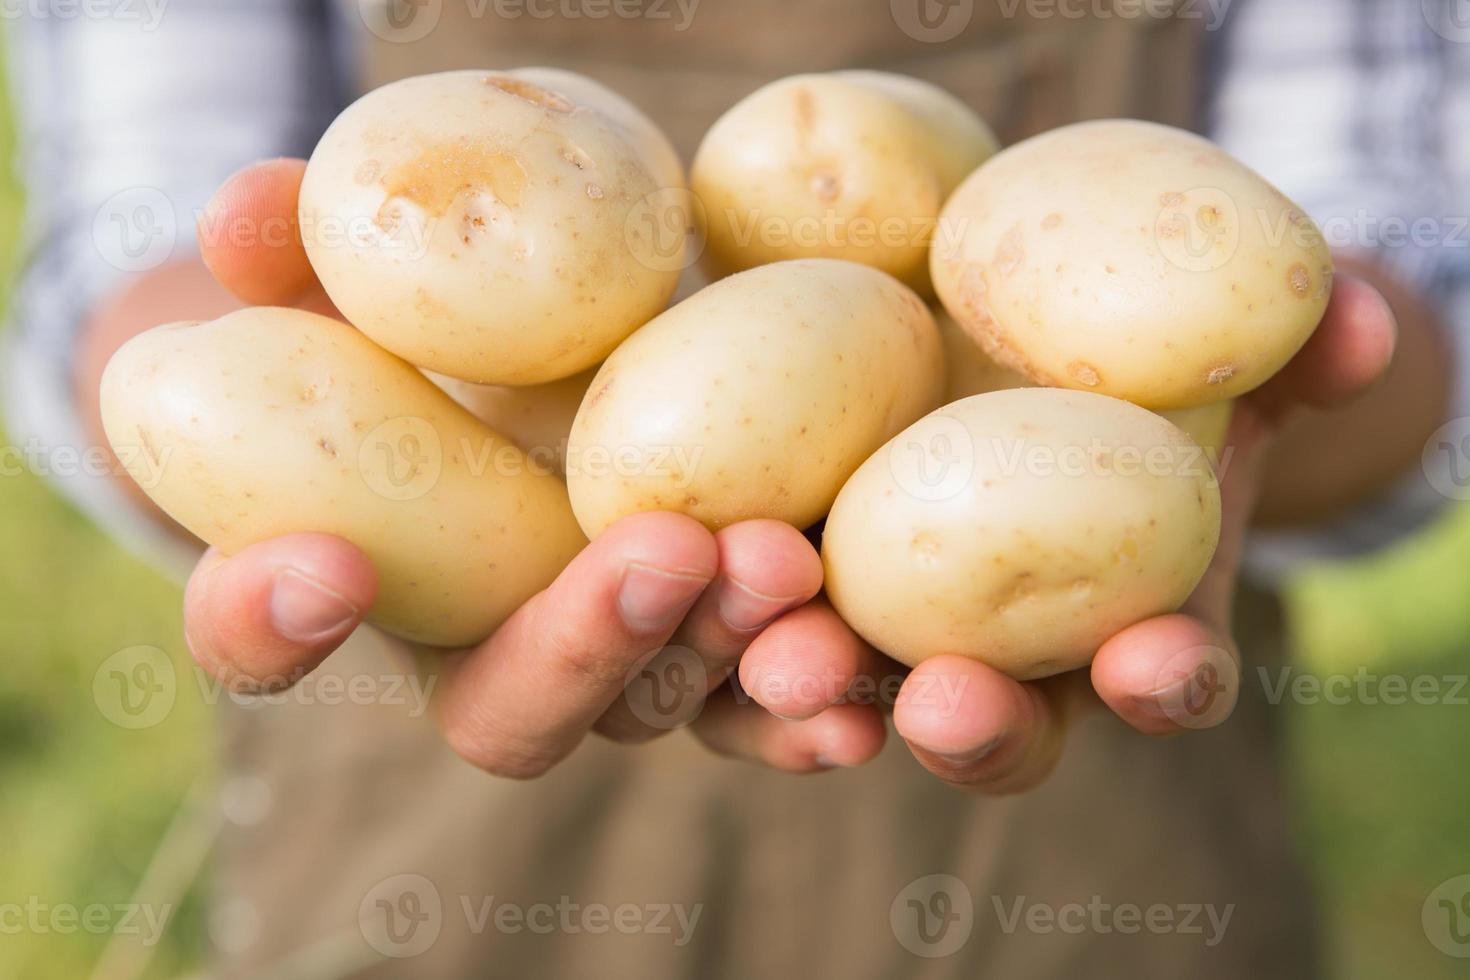 agricultor mostrando suas batatas orgânicas foto